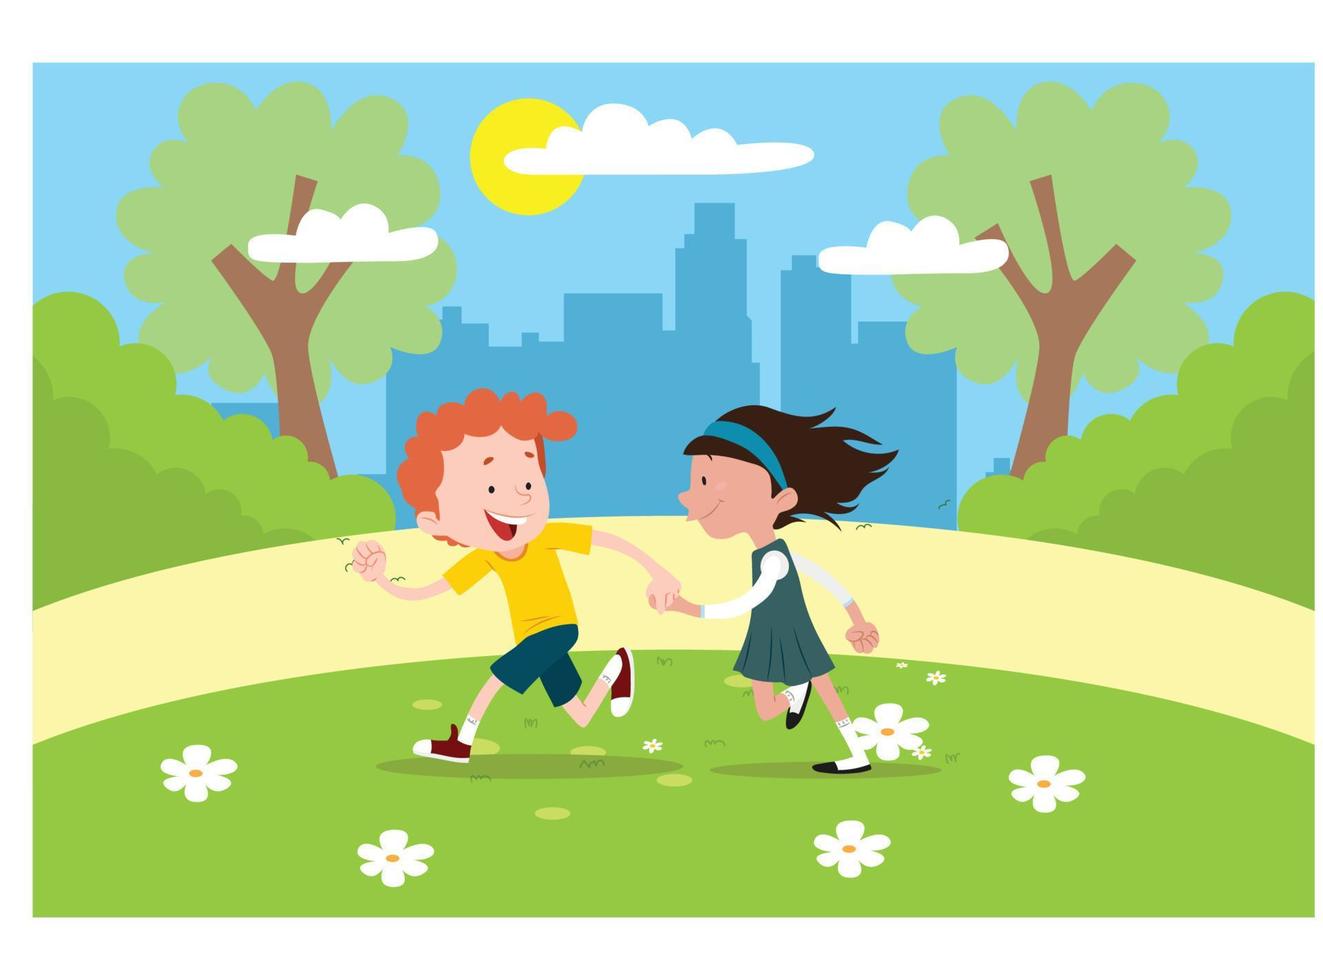 ilustração plana jogando no parque feliz com os amigos. adequado para diagramas, infográficos e outros ativos gráficos vetor